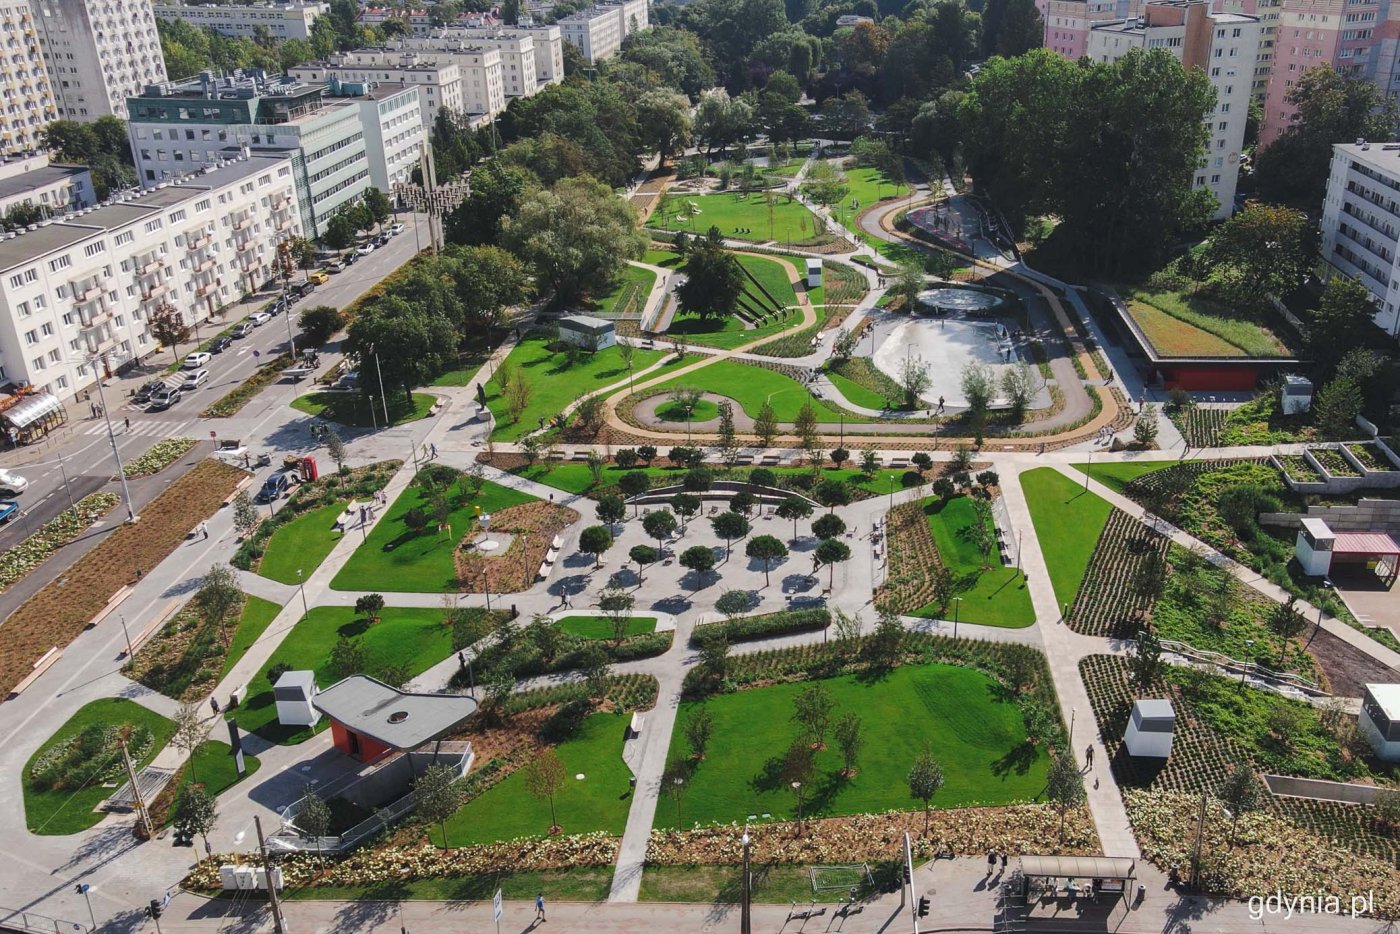 Park Centralny, etap trzeci, zdjęcie z drona, parkowe alejki, drzewa, roślinność, fragment Gdyni i budynki